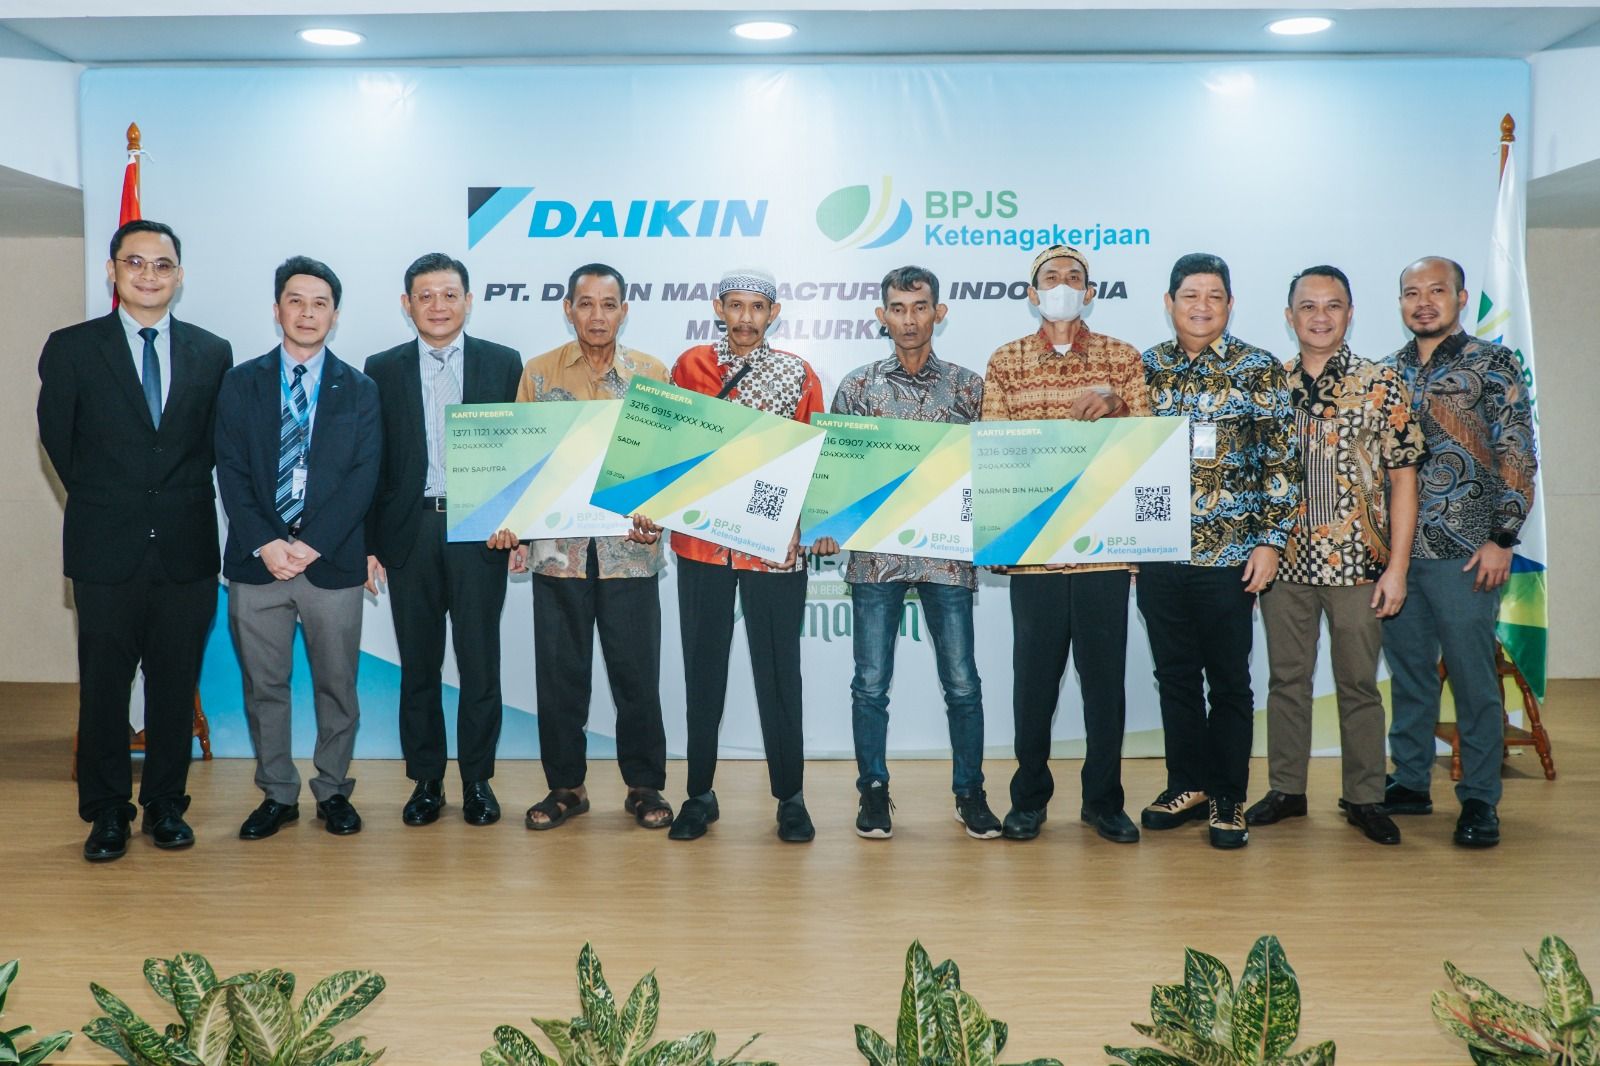  Direktur BPJS Ketenagakerjaan memuji DAIKIN karena menjadi perusahaan teratas yang menunjukkan kepeduliannya terhadap masyarakat, terutama pekerja rentan di Indonesia.